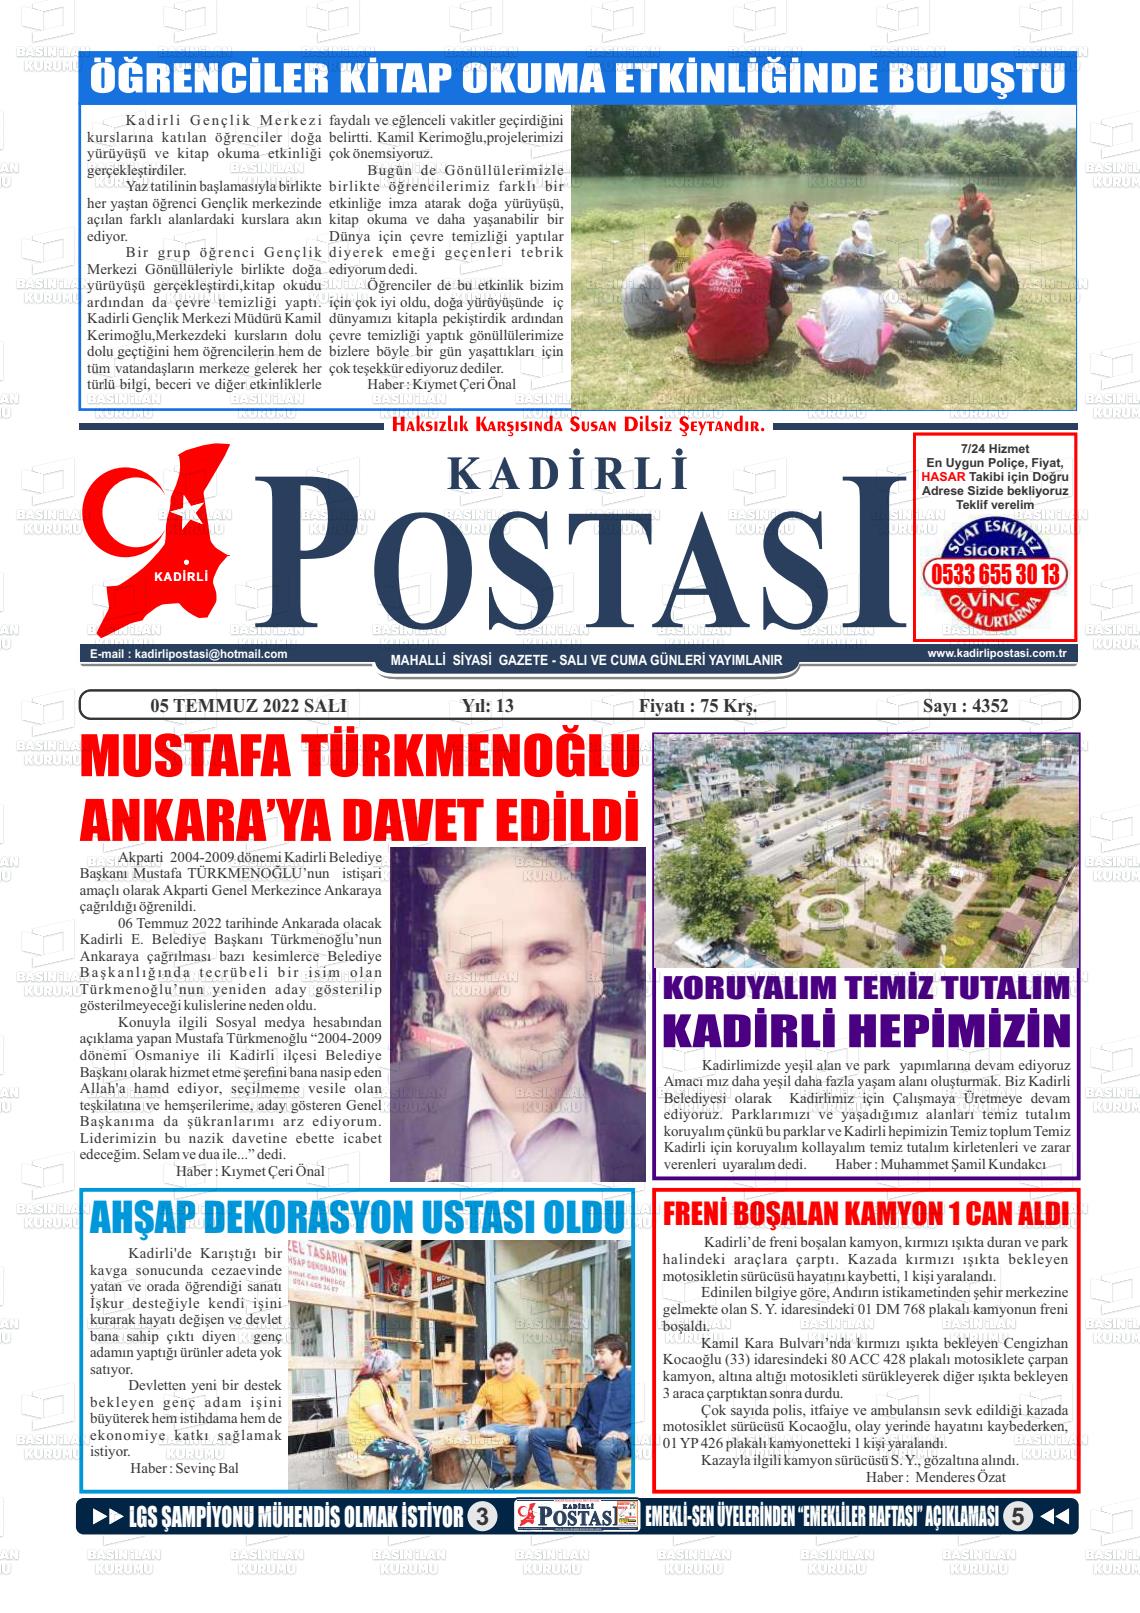 05 Temmuz 2022 Kadirli Postası Gazete Manşeti